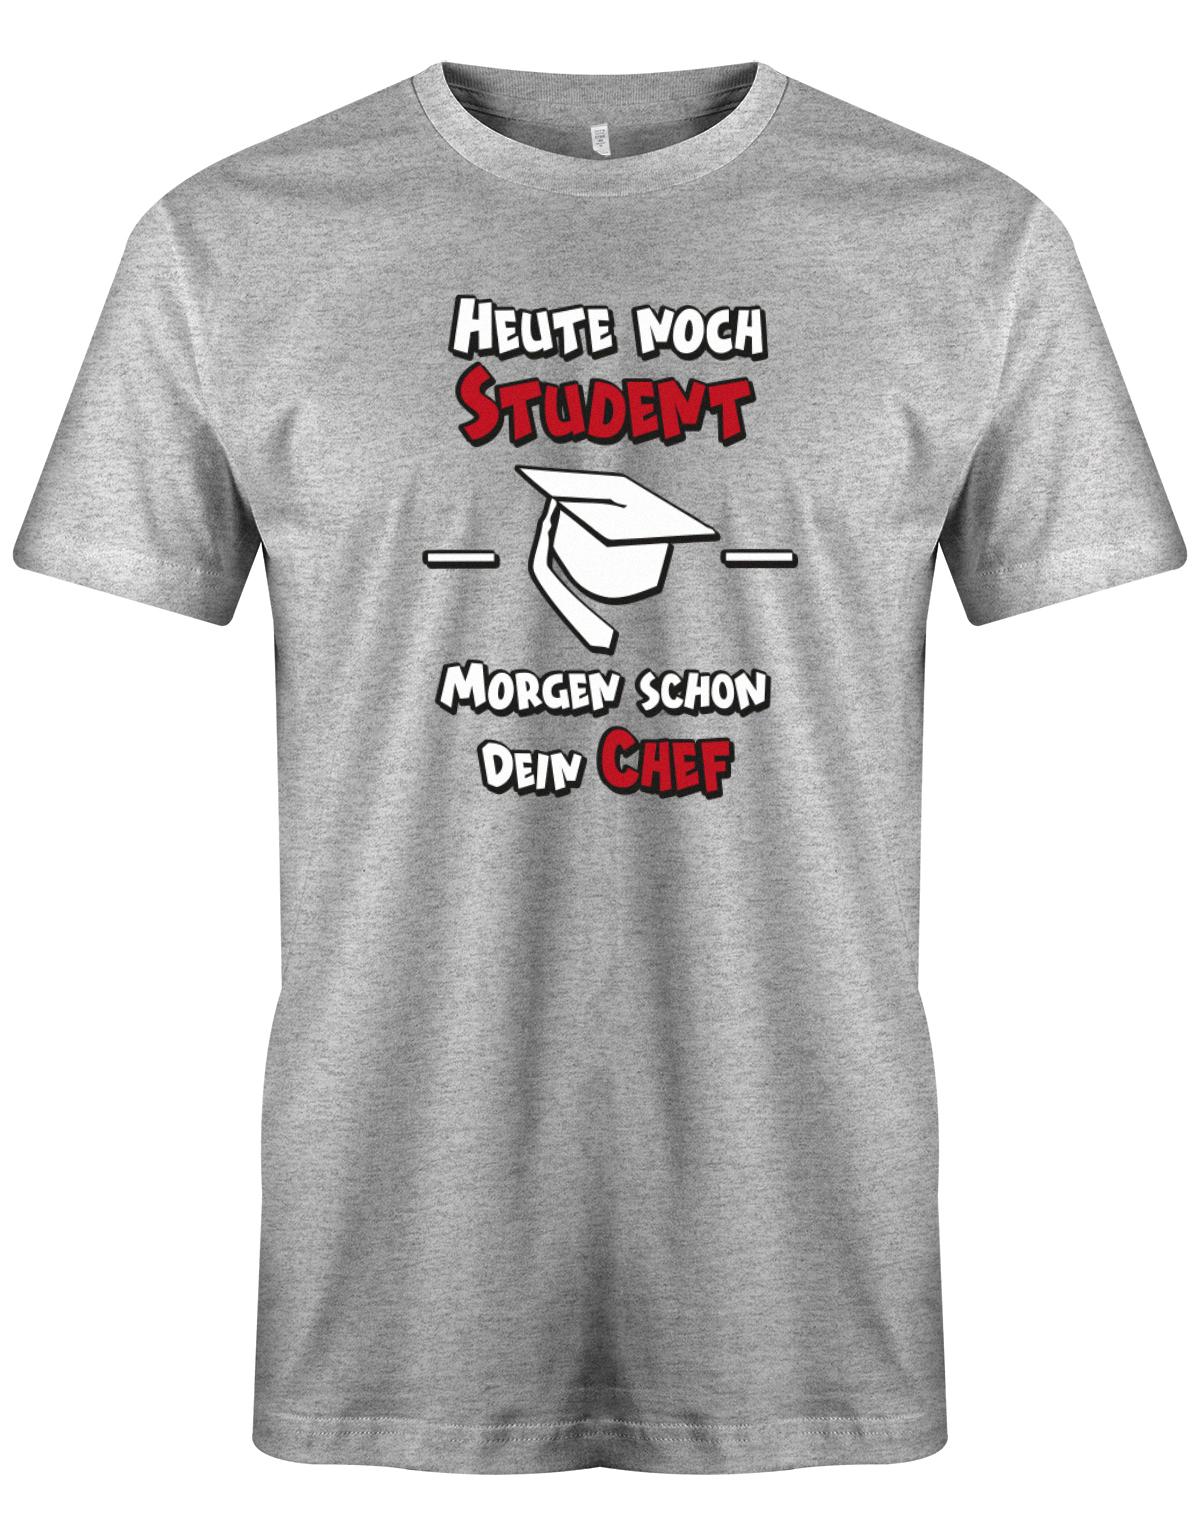 Heute-noch-Student-morgen-schon-dein-Chef-Herren-Studium-Shirt-Grau